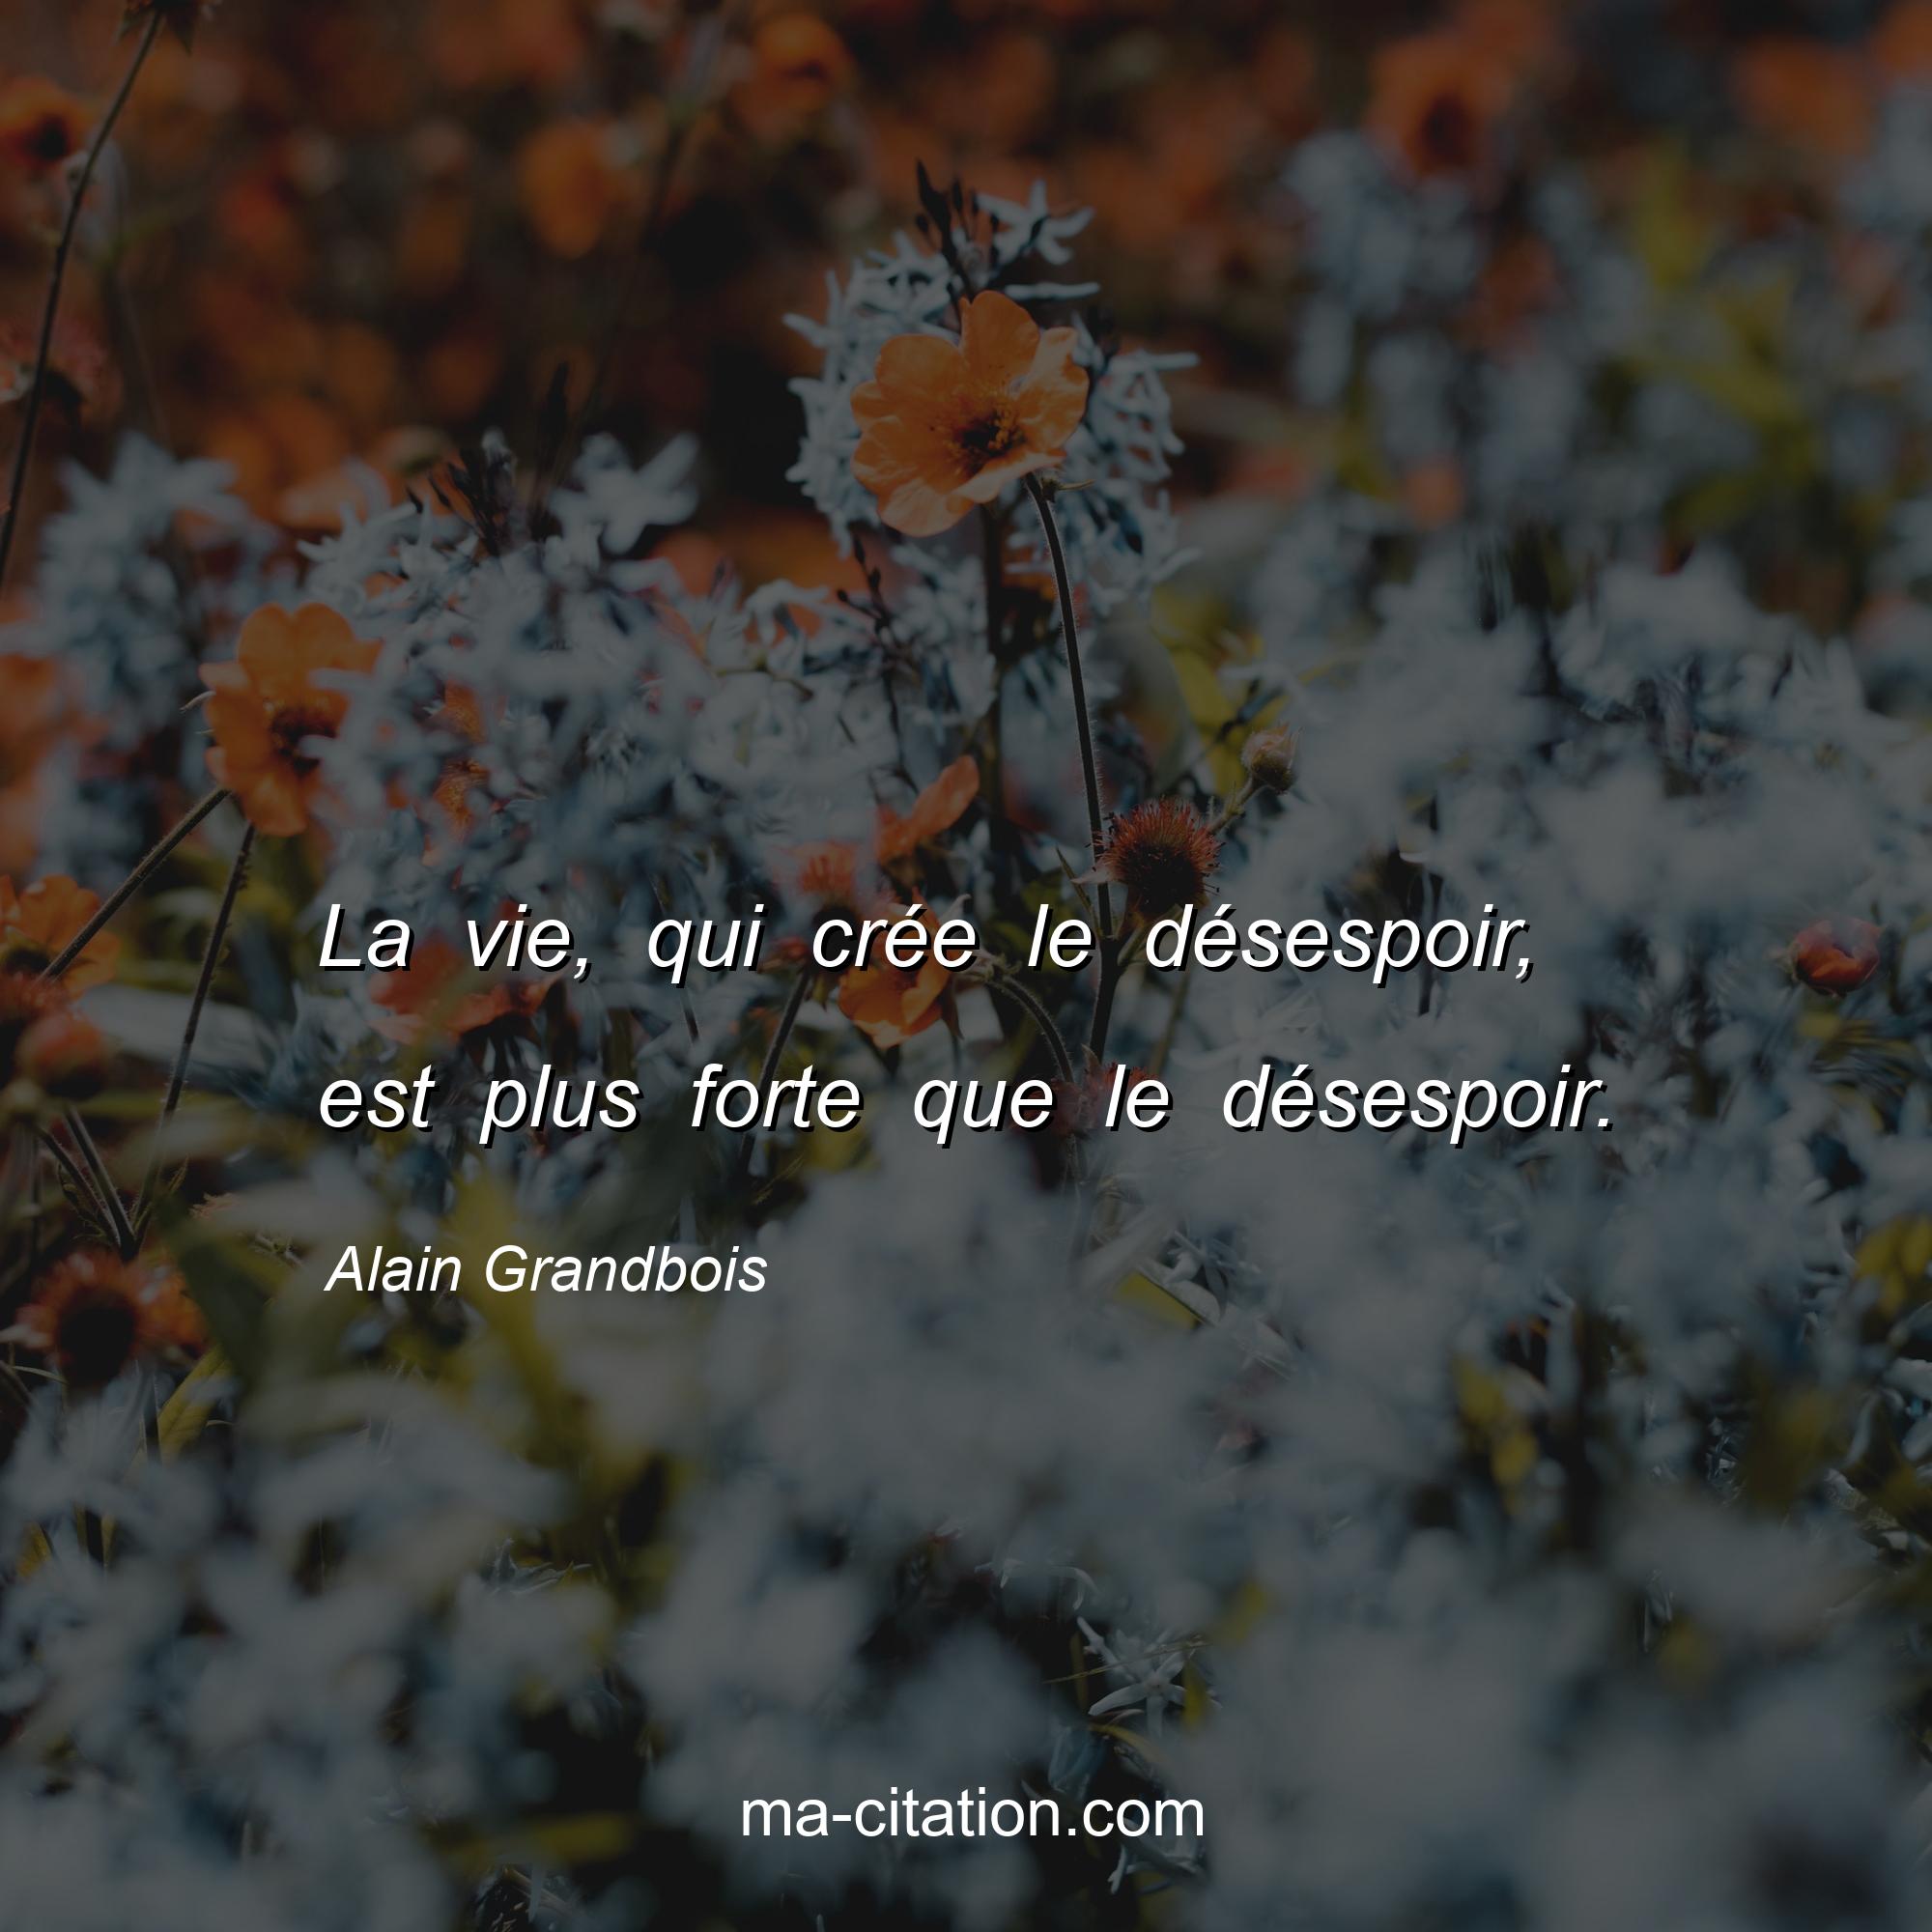 Alain Grandbois : La vie, qui crée le désespoir, est plus forte que le désespoir.